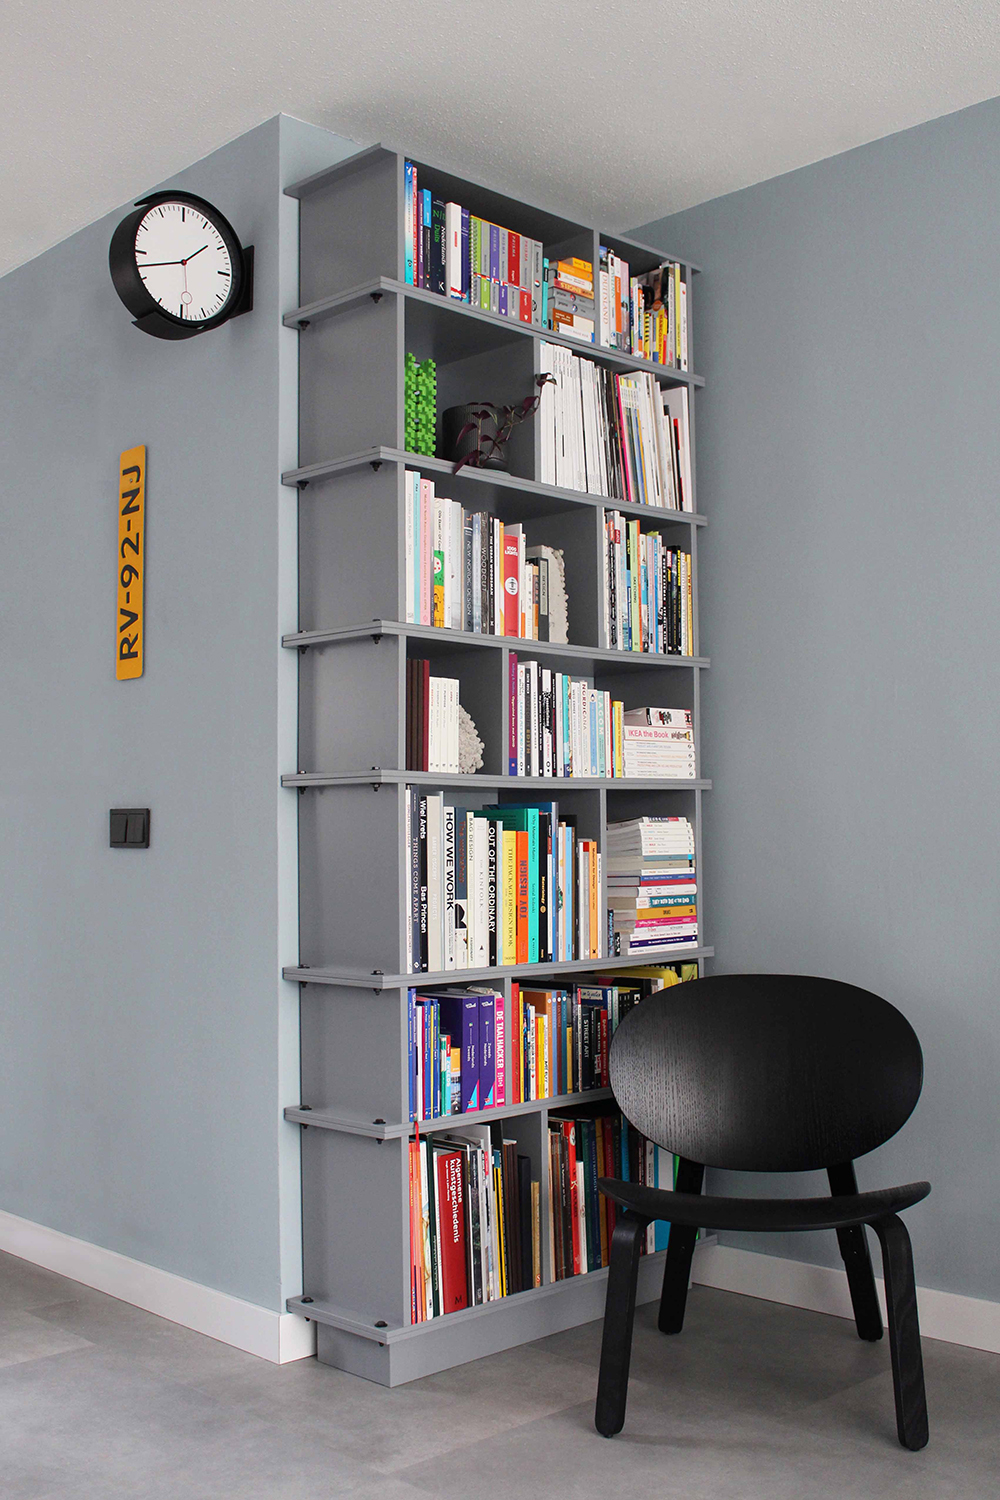 Grijze geschilderde boekenkast, bestaande uit losse delen. Met elkaar verbonden door grote zwarte bouten. Interieurontwerp, meubel, meubelmaker, retail design, interior